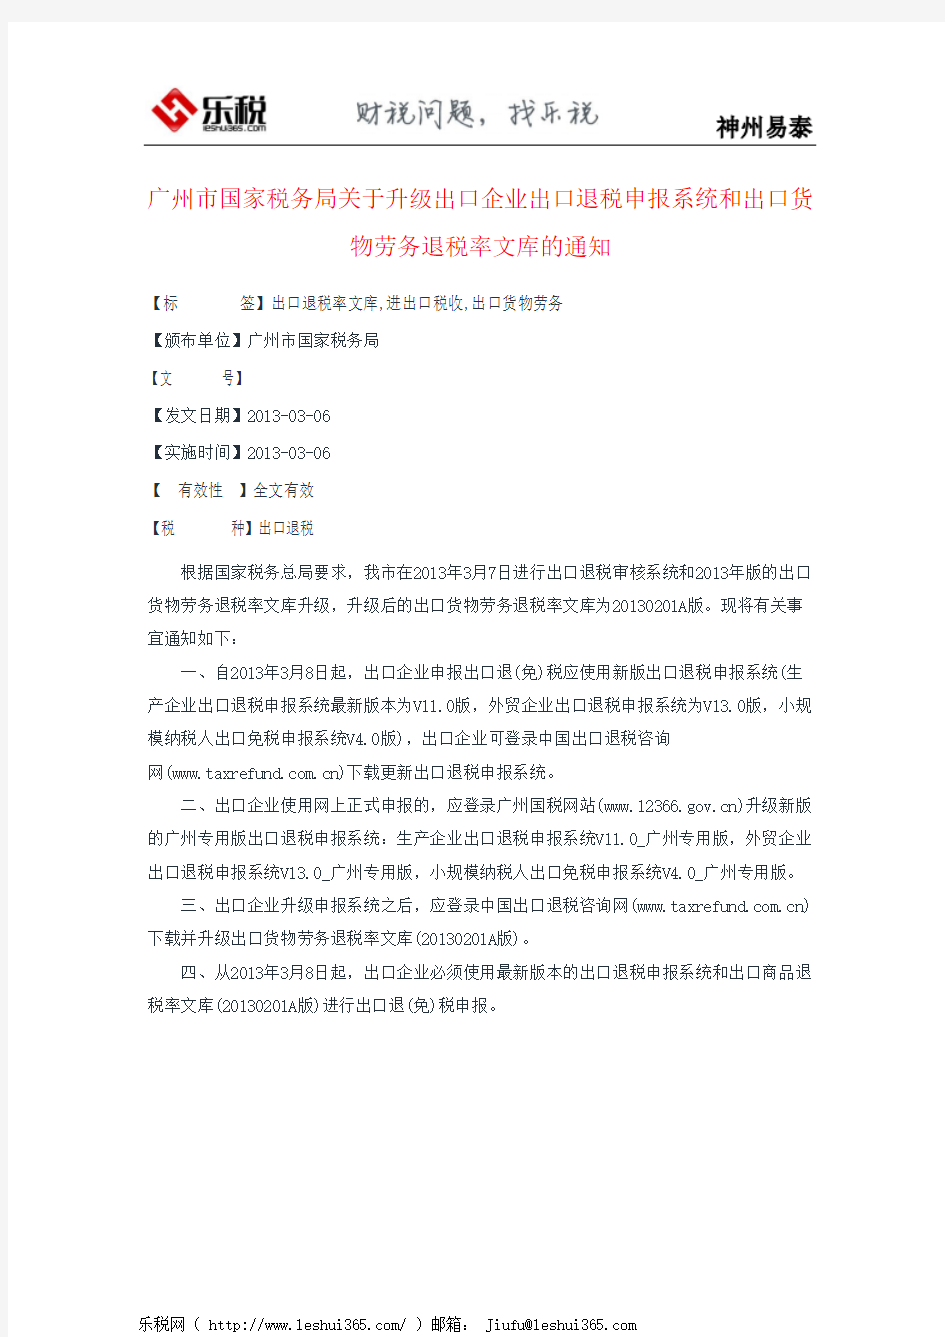 广州市国家税务局关于升级出口企业出口退税申报系统和出口货物劳